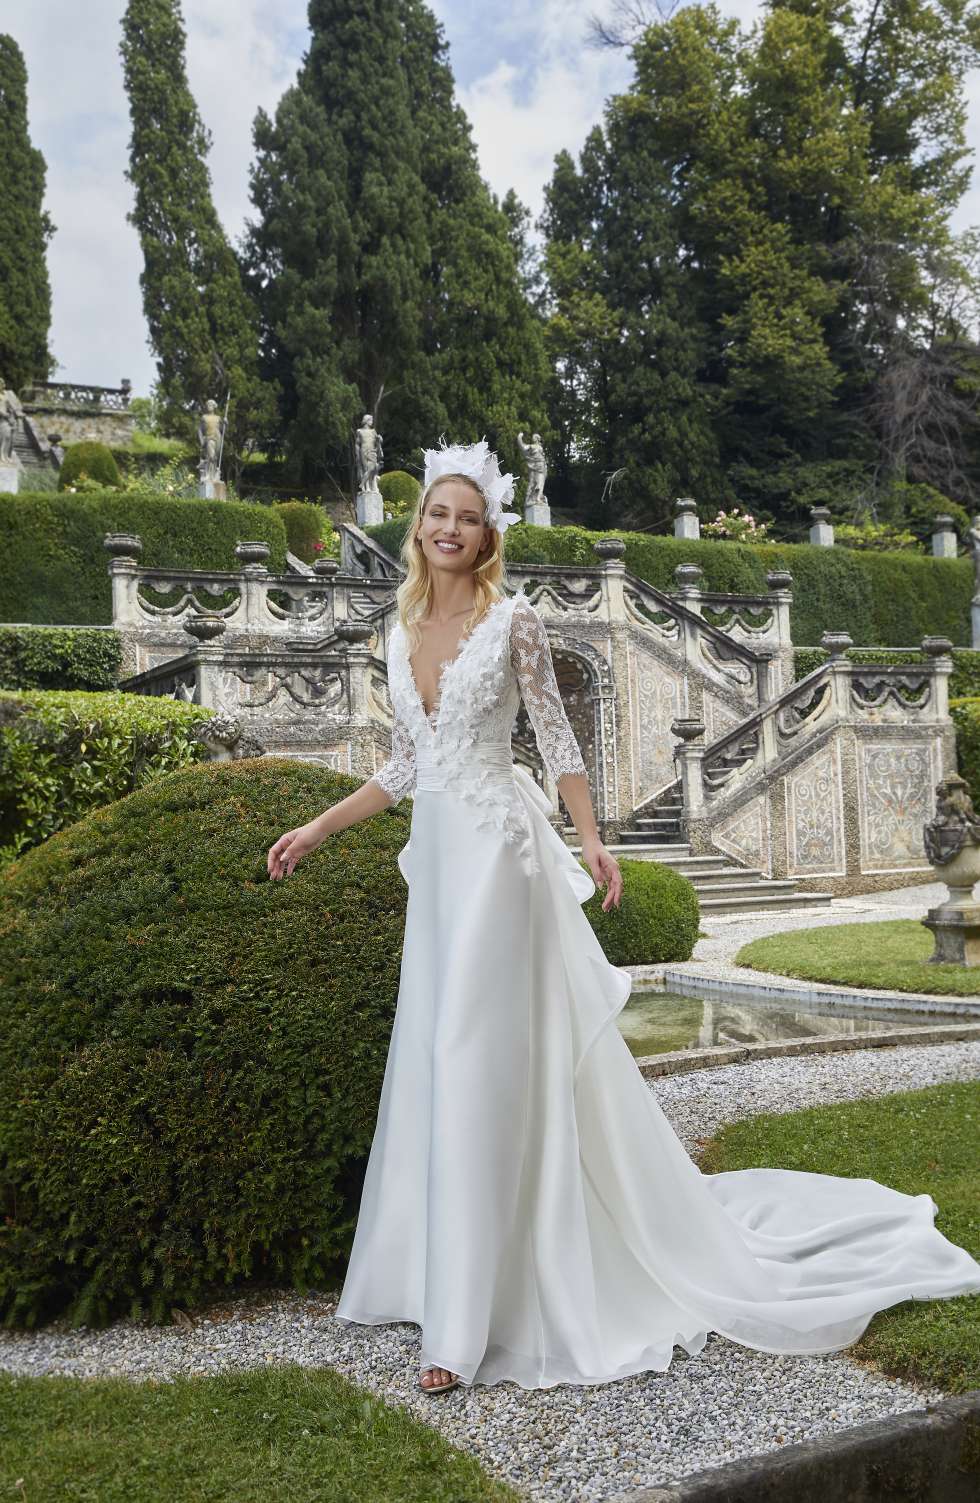 The 2021 Wedding Dresses by Elisabetta Polignano - Farfalla